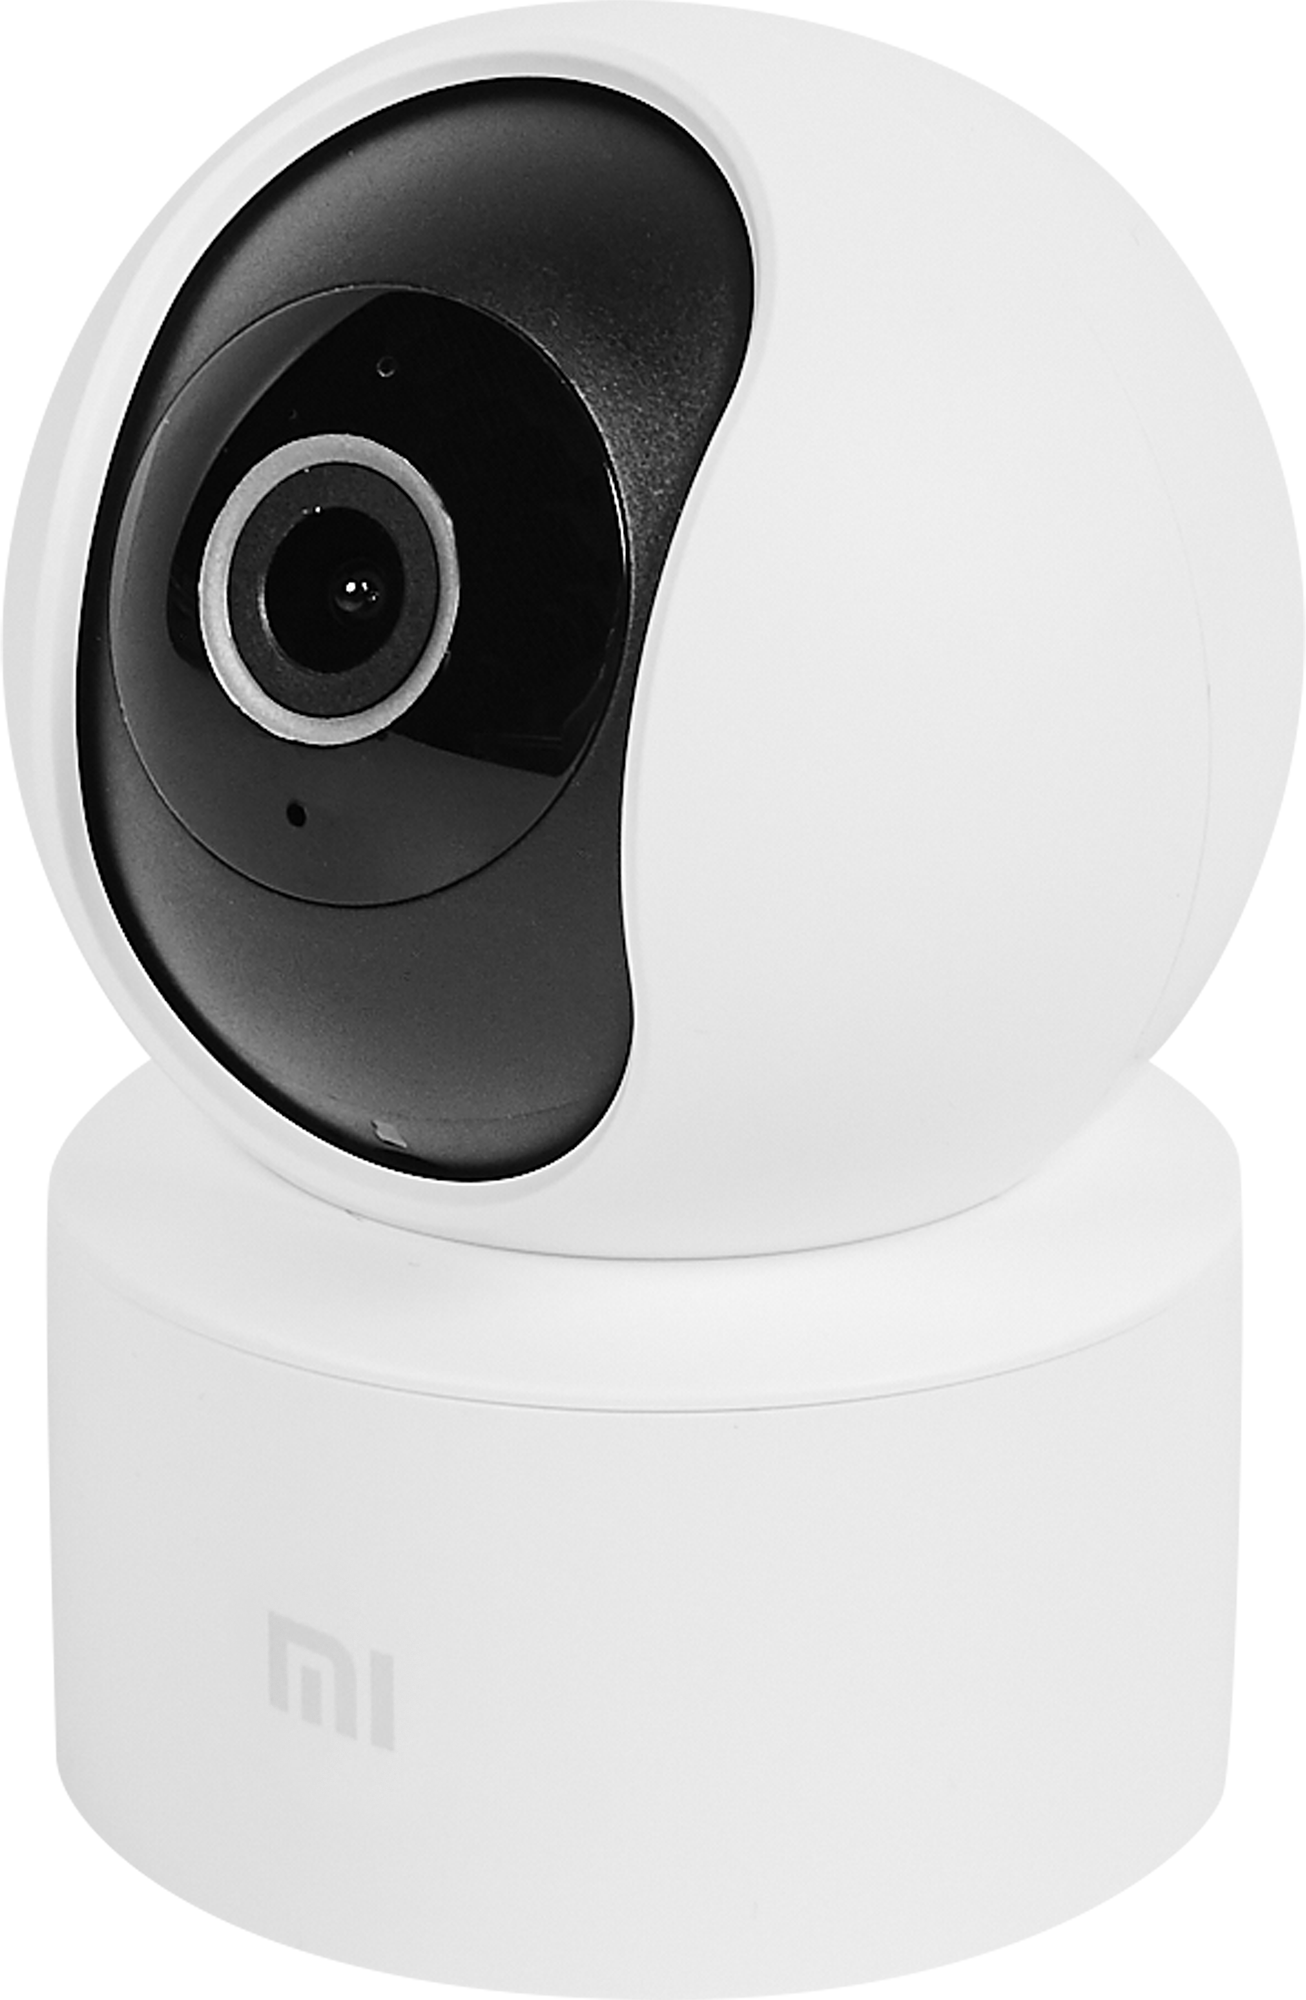 Купить камеру mi. IP камера Сяоми 360 1080. Камера ксиоми для видеонаблюдения 360 1080p. IP-камера Xiaomi mi 360 (1080p) mjsxj10cm. IP-камера Xiaomi Home Security Camera qdj4058gl.